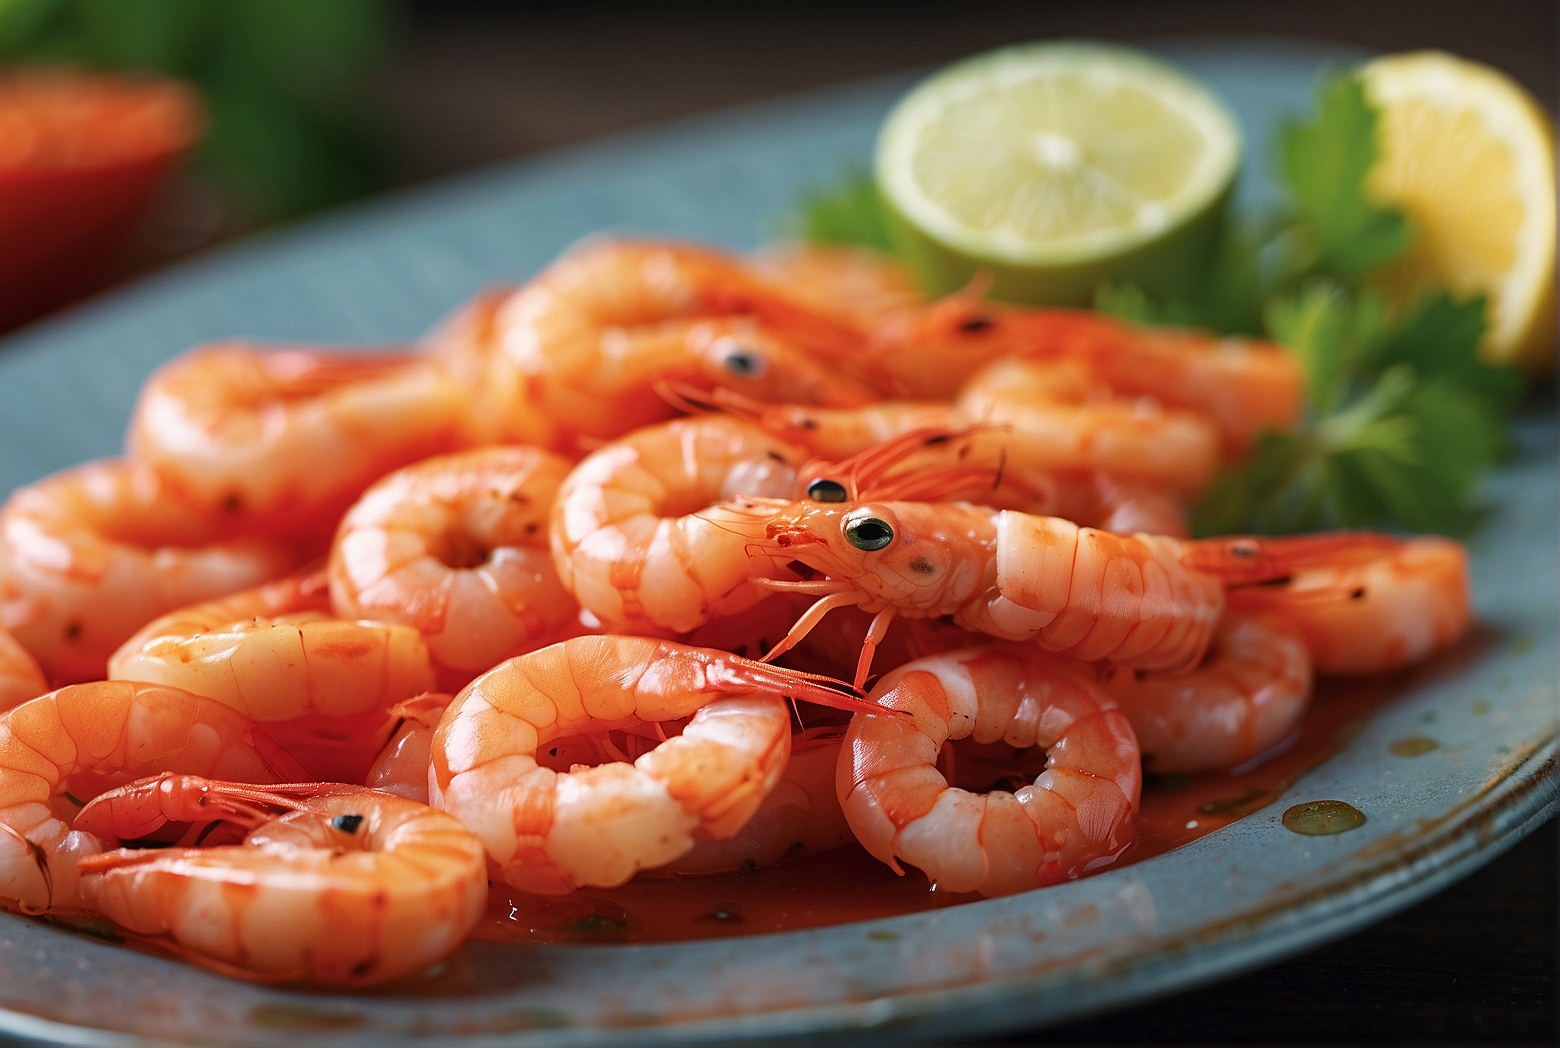 Can Platies Eat Shrimp?